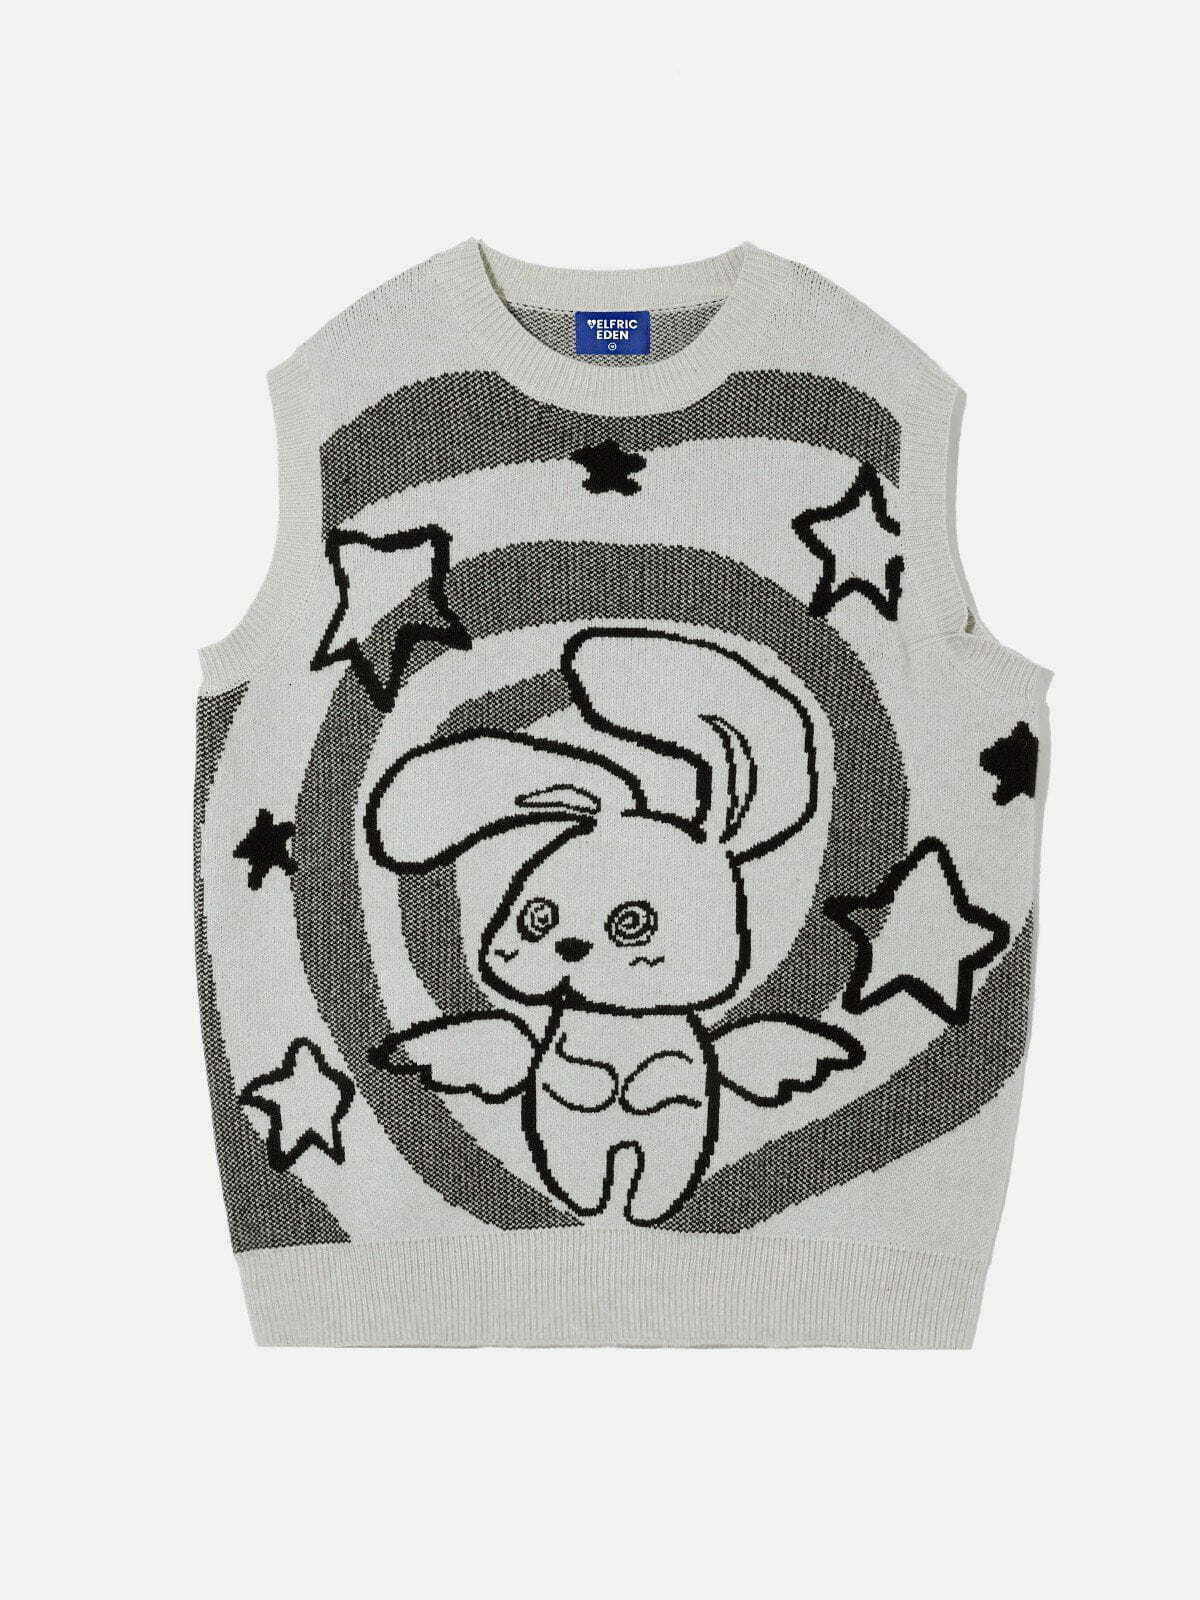 cartoon knit sweater vest   youthful & trendy streetwear 8877